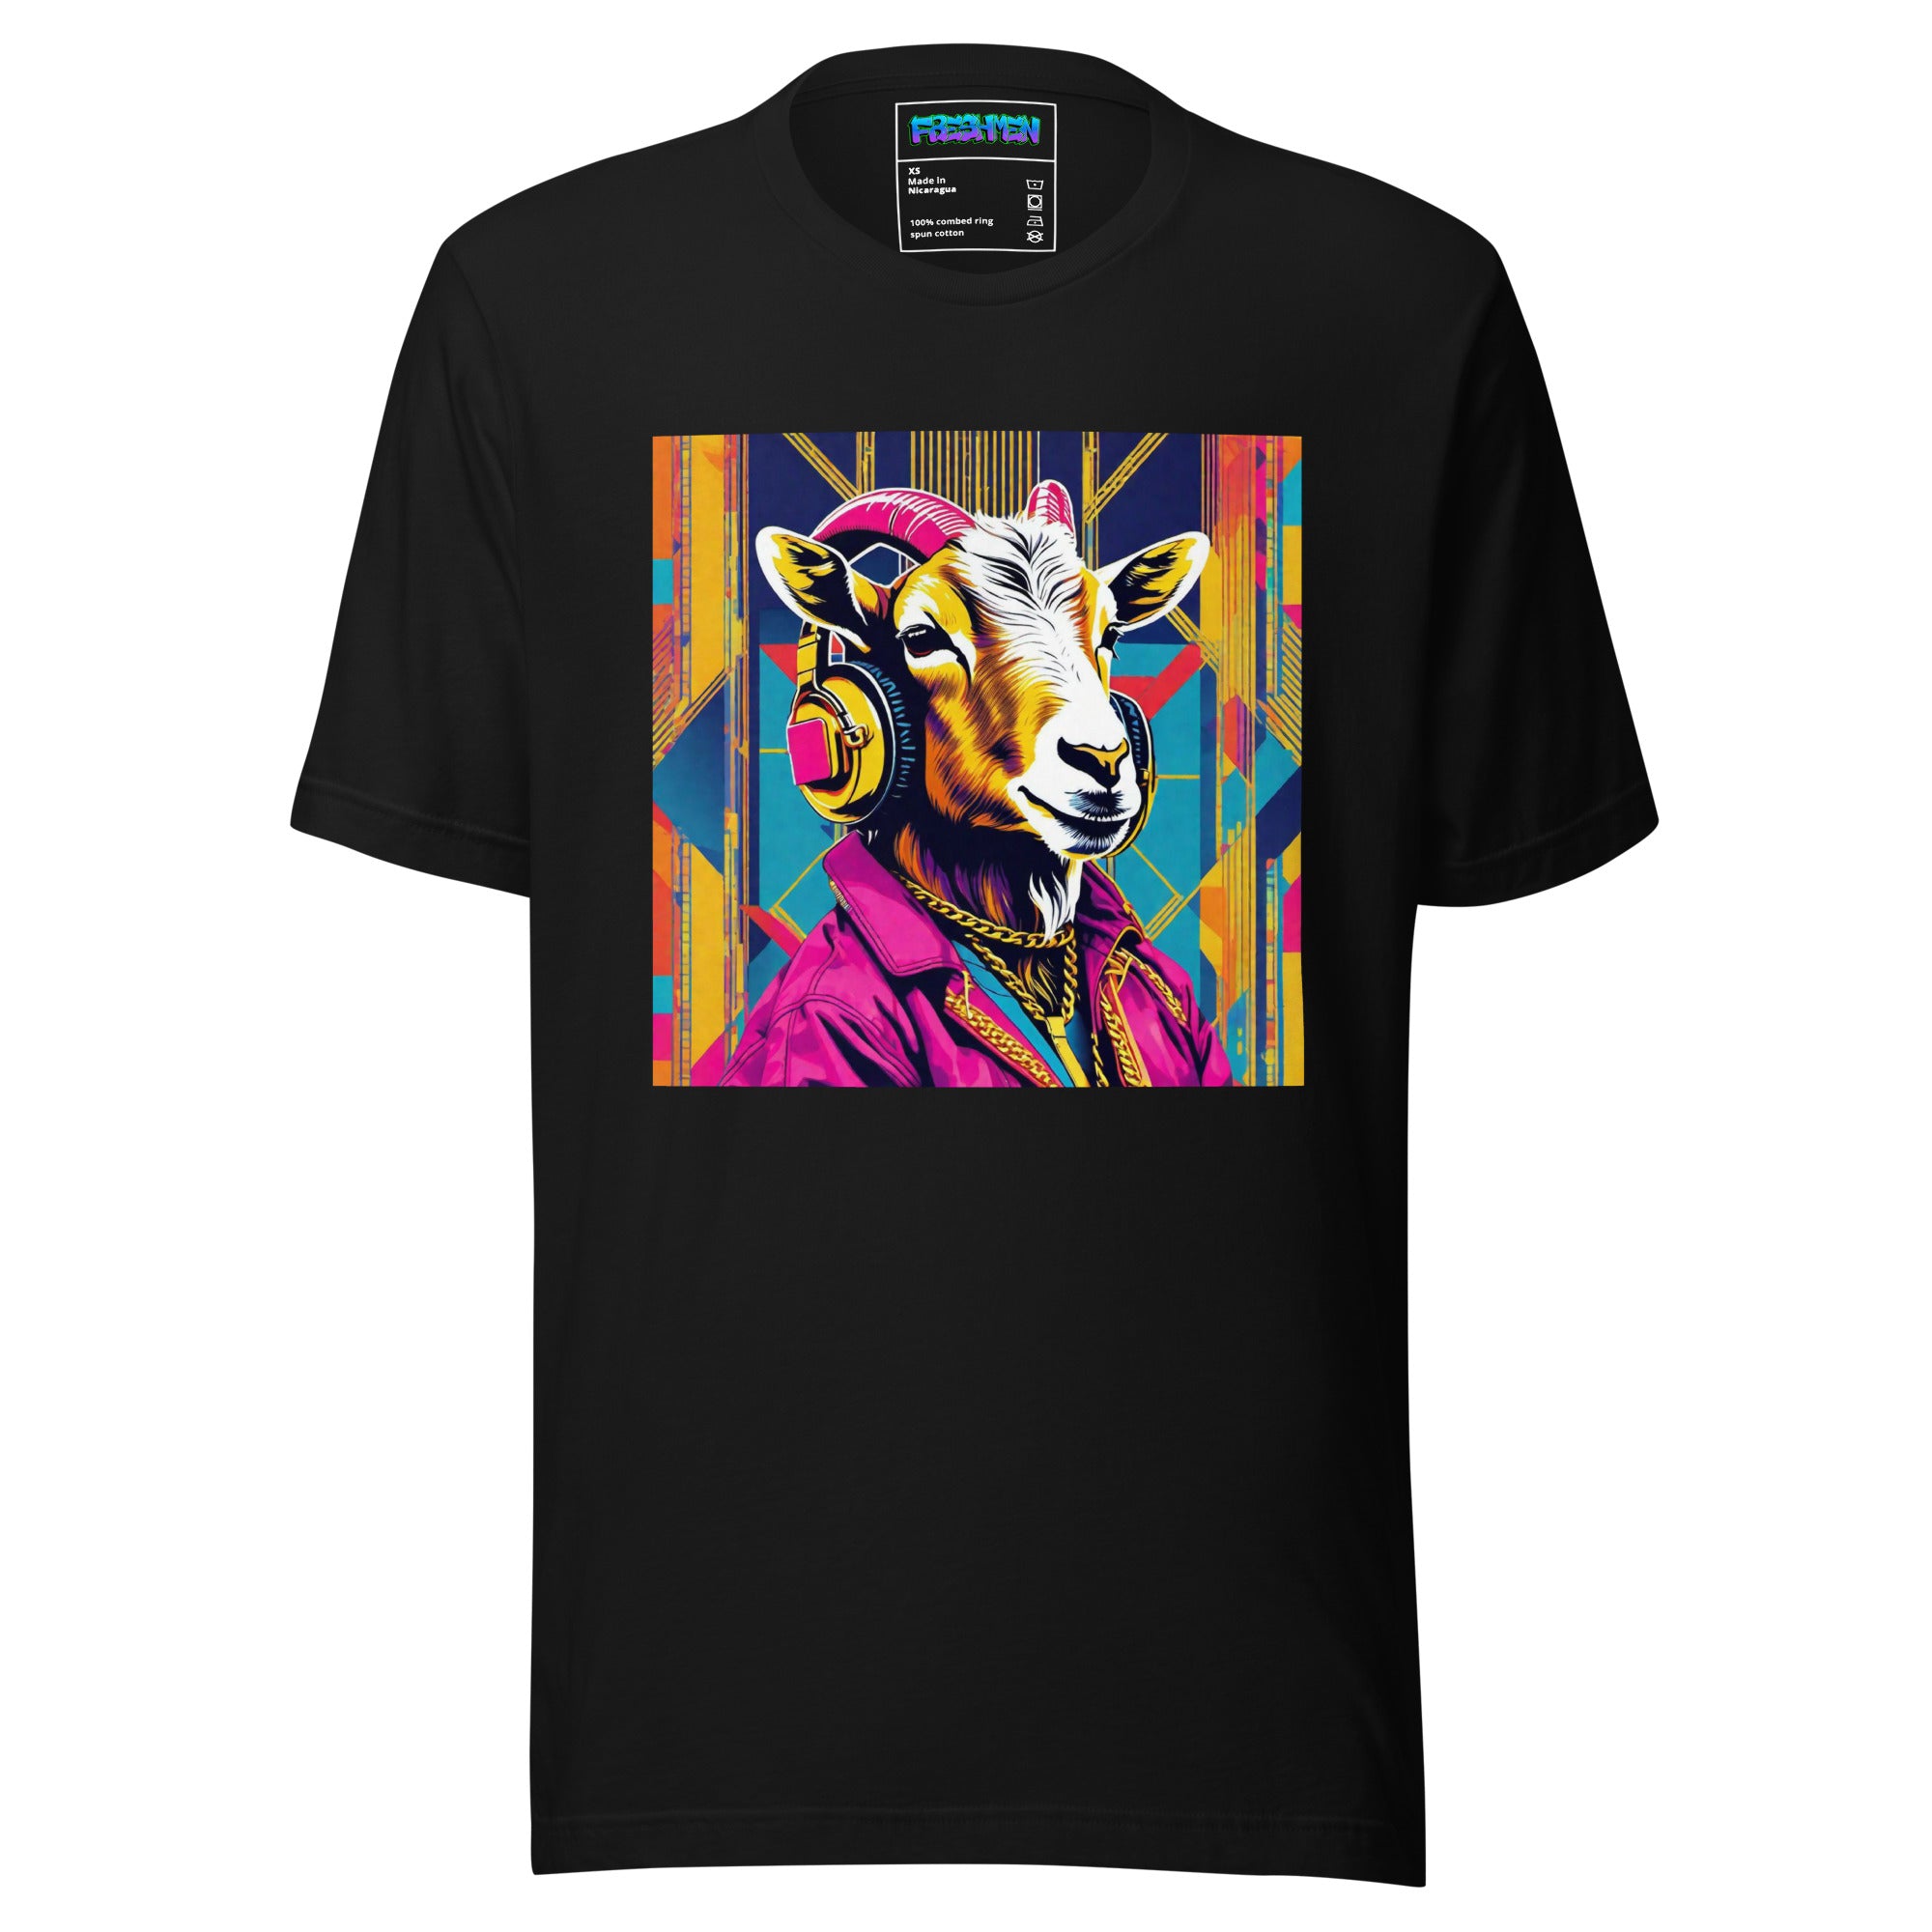 Freshmen Goated Lifestyle Unisex Graphic T-Shirt